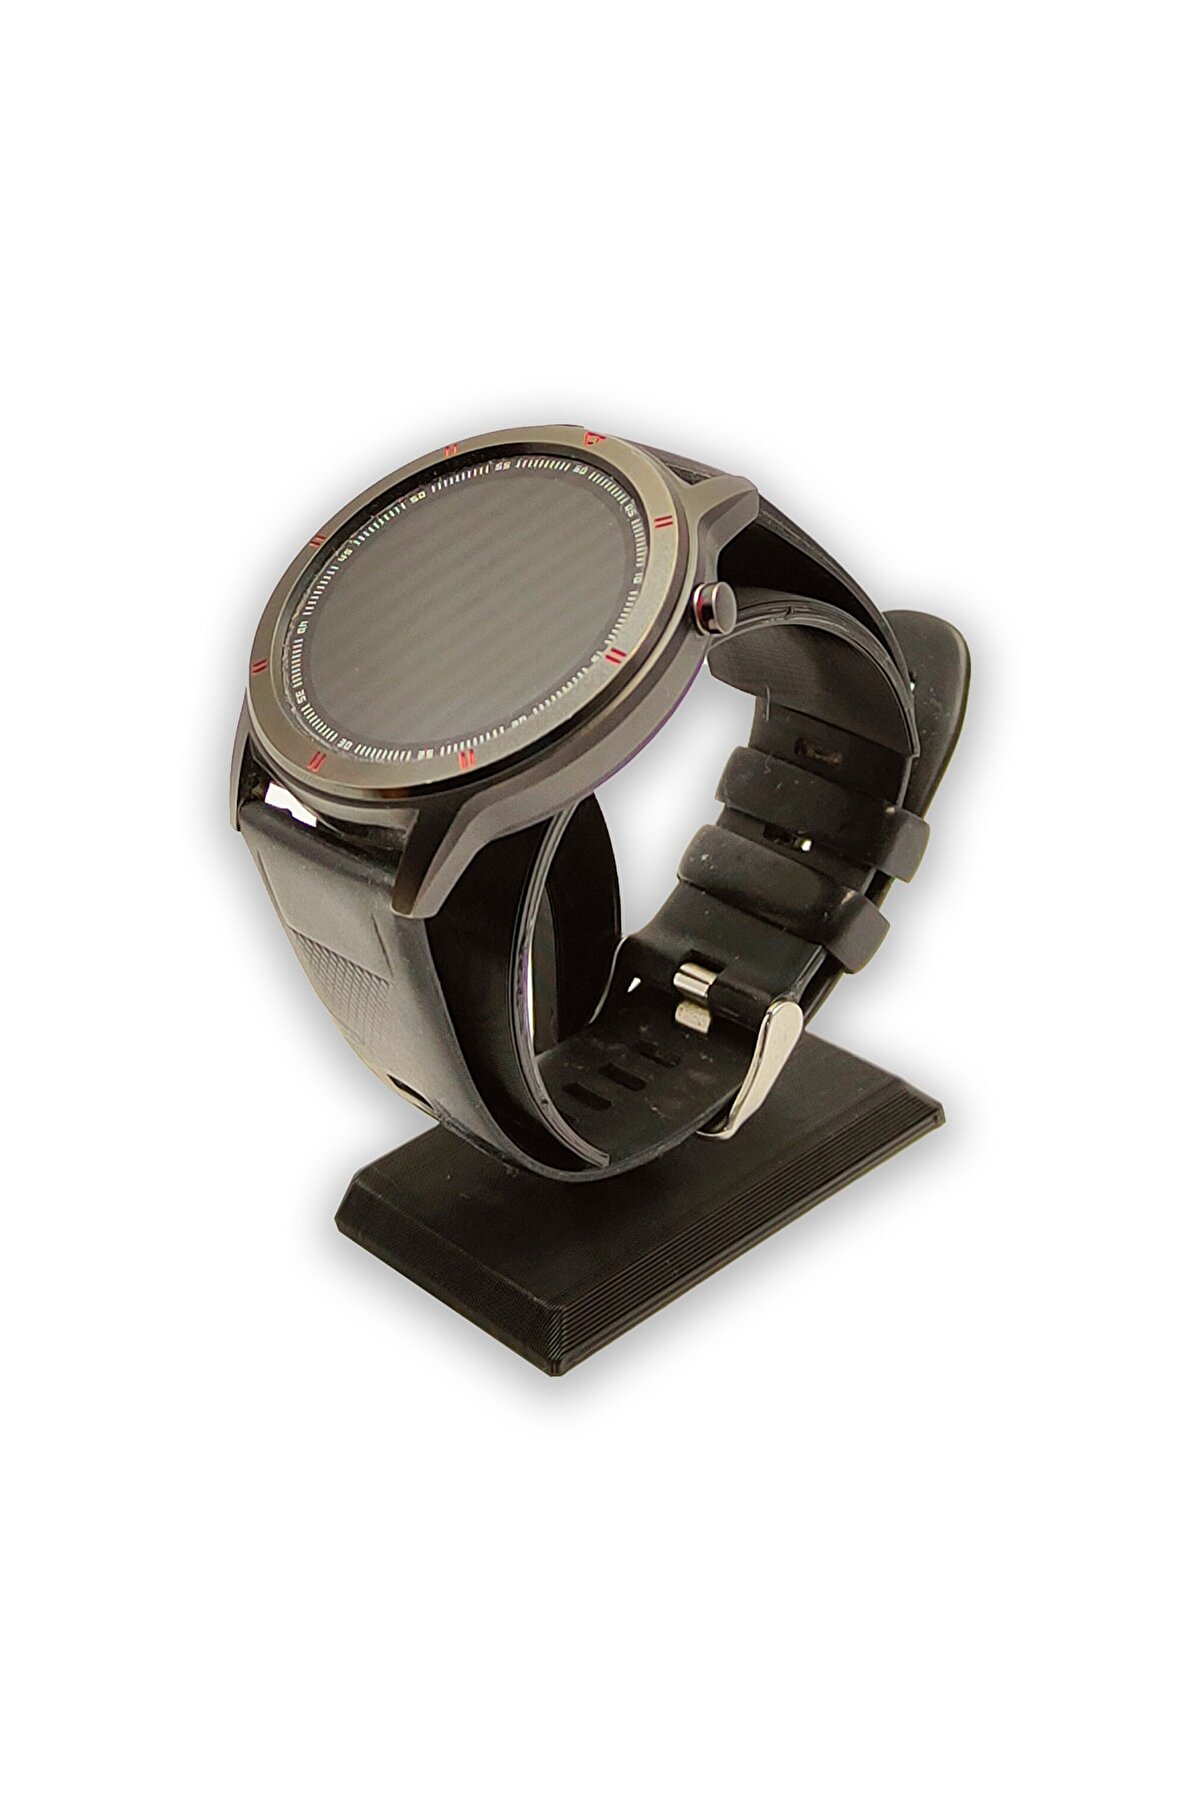 BİRRDESİGN Siyah Renk Kişisel Saat Standı Özel Takı Aksesuar Bileklik Metal Saat Dijital Saat Akıllı Saat